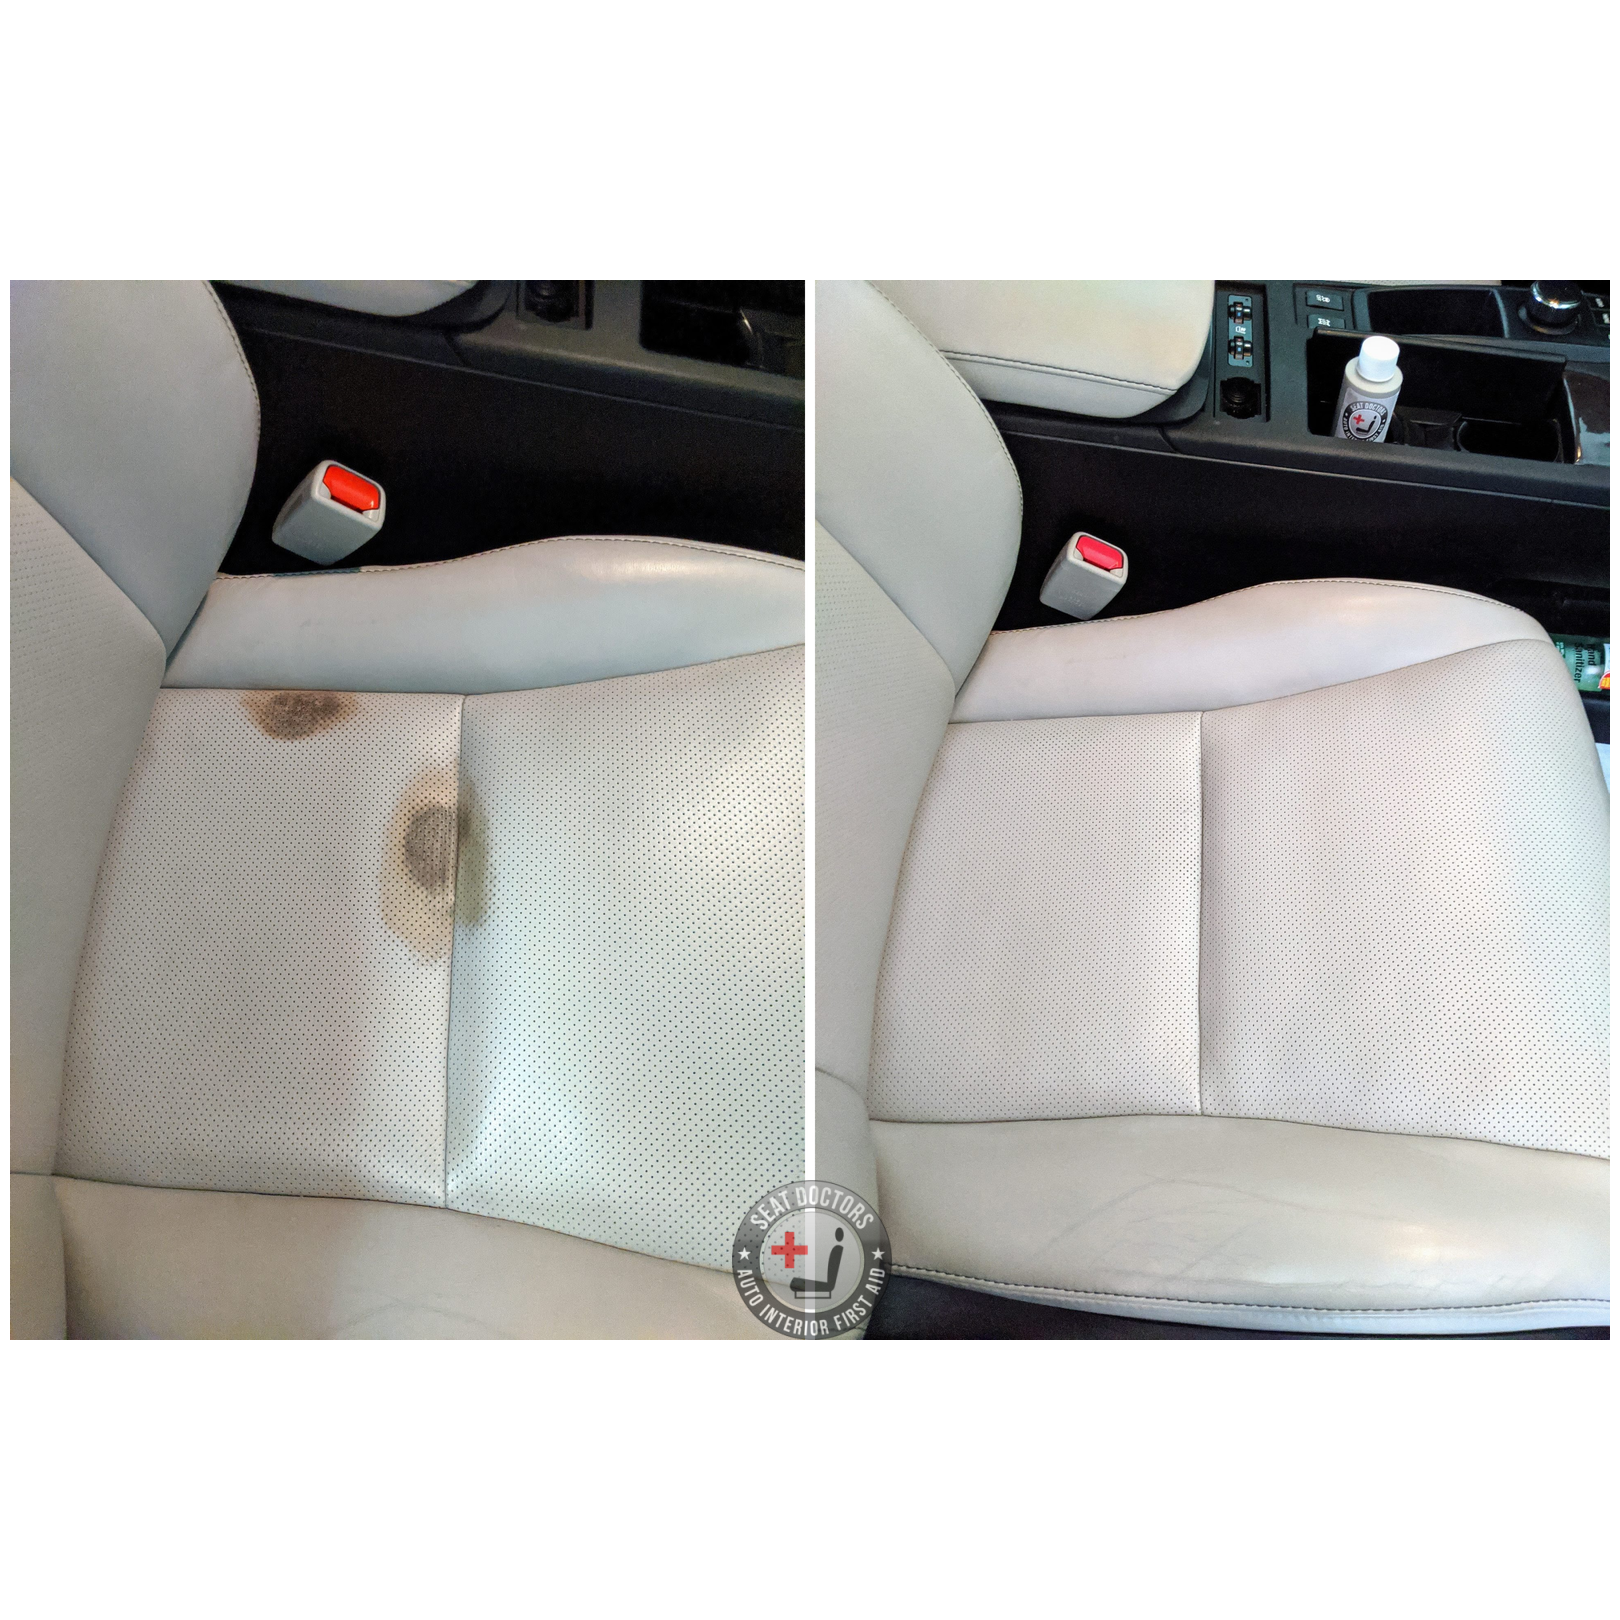 Leather car seat repair help : r/CarRepair